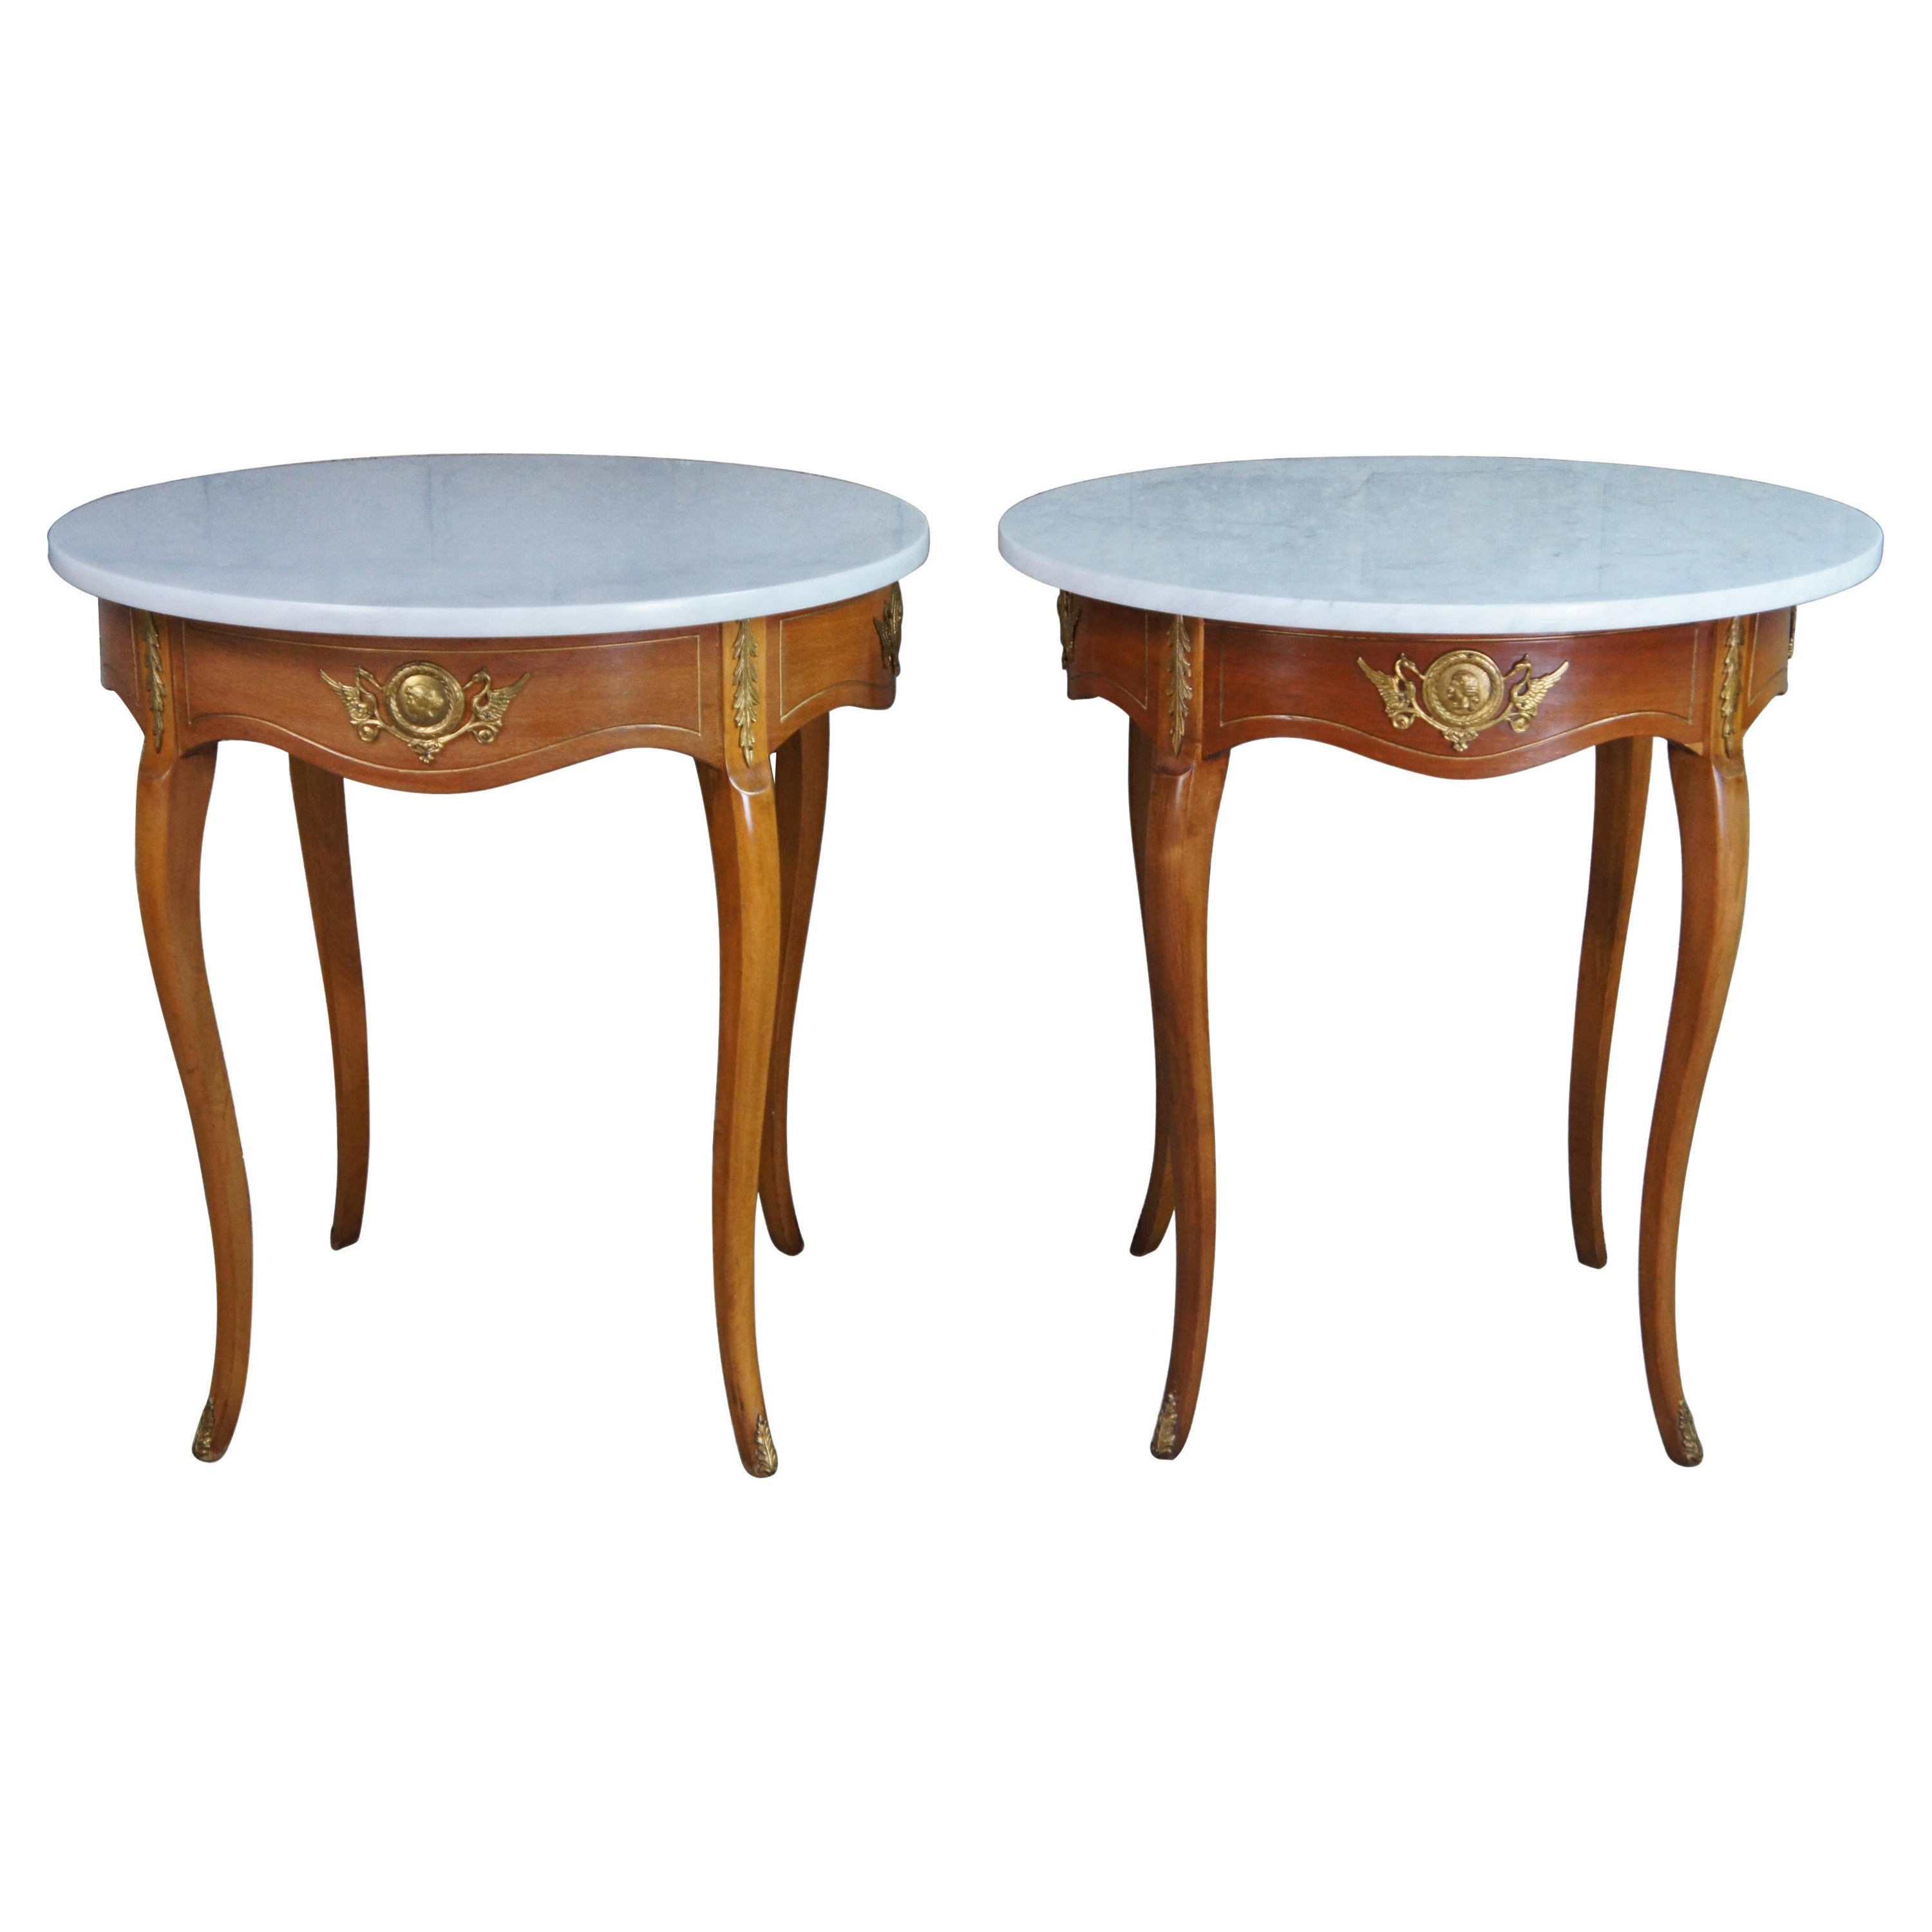 2 Anciennes tables d'appoint italiennes néoclassiques rondes en marbre et bois fruitier Gueridon